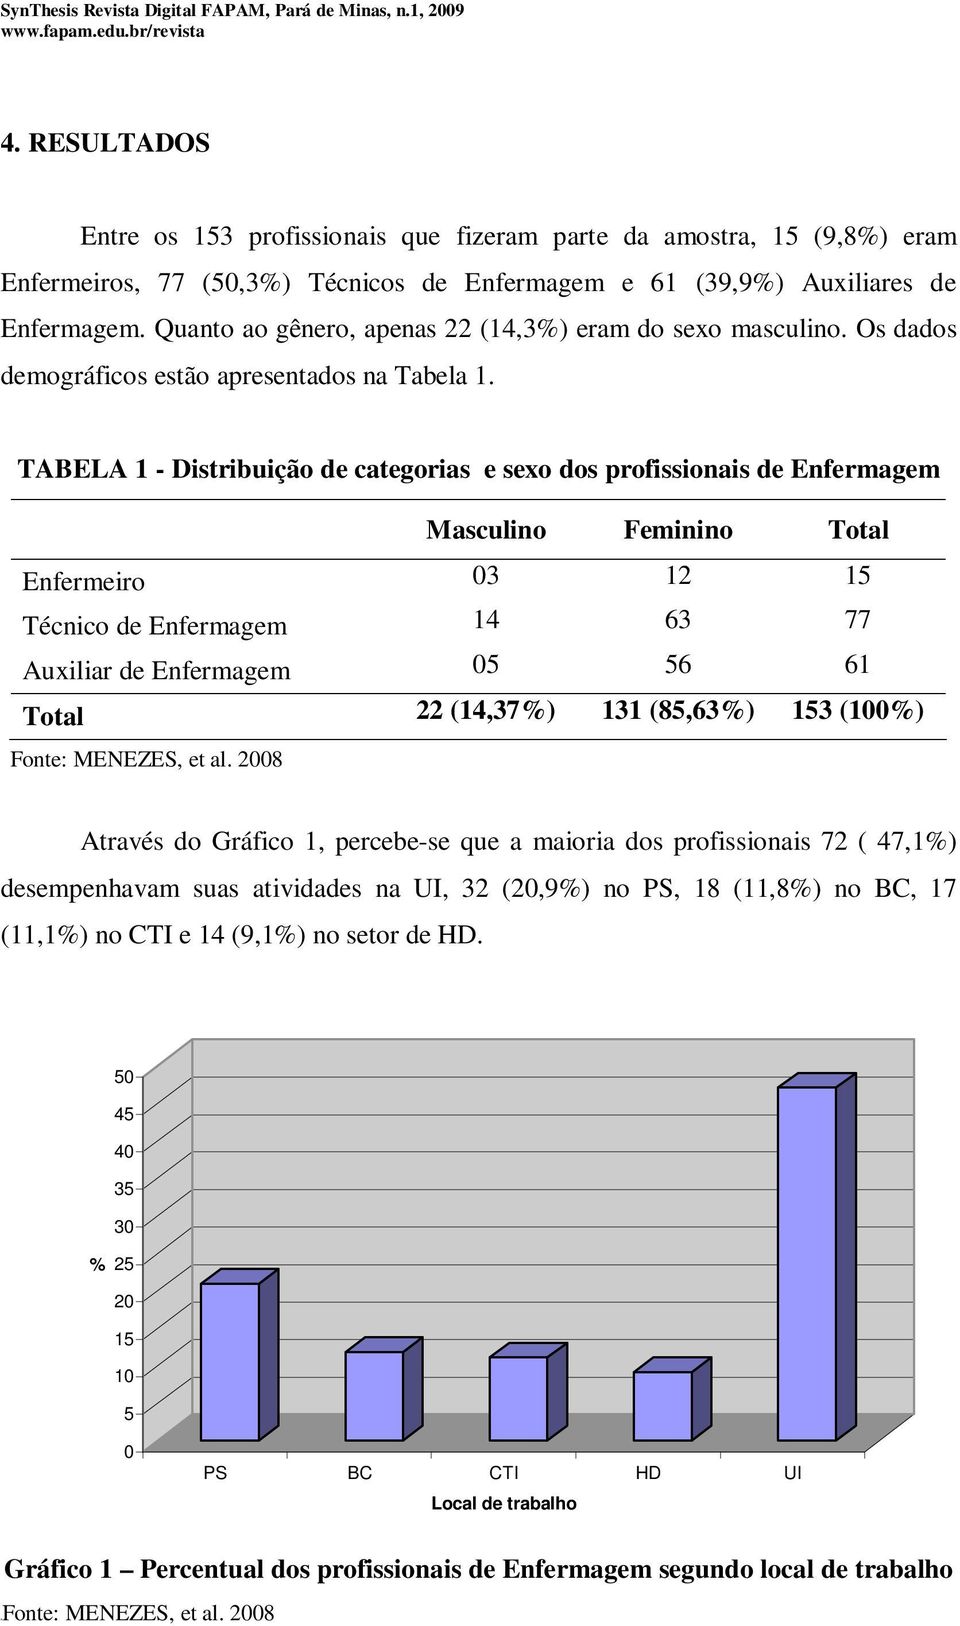 TABELA 1 - Distribuição de categorias e sexo dos profissionais de Masculino Feminino Total Enfermeiro 03 12 15 Técnico de 14 63 77 Auxiliar de 05 56 61 Total 22 (14,37%) 131 (85,63%) 153 (100%)